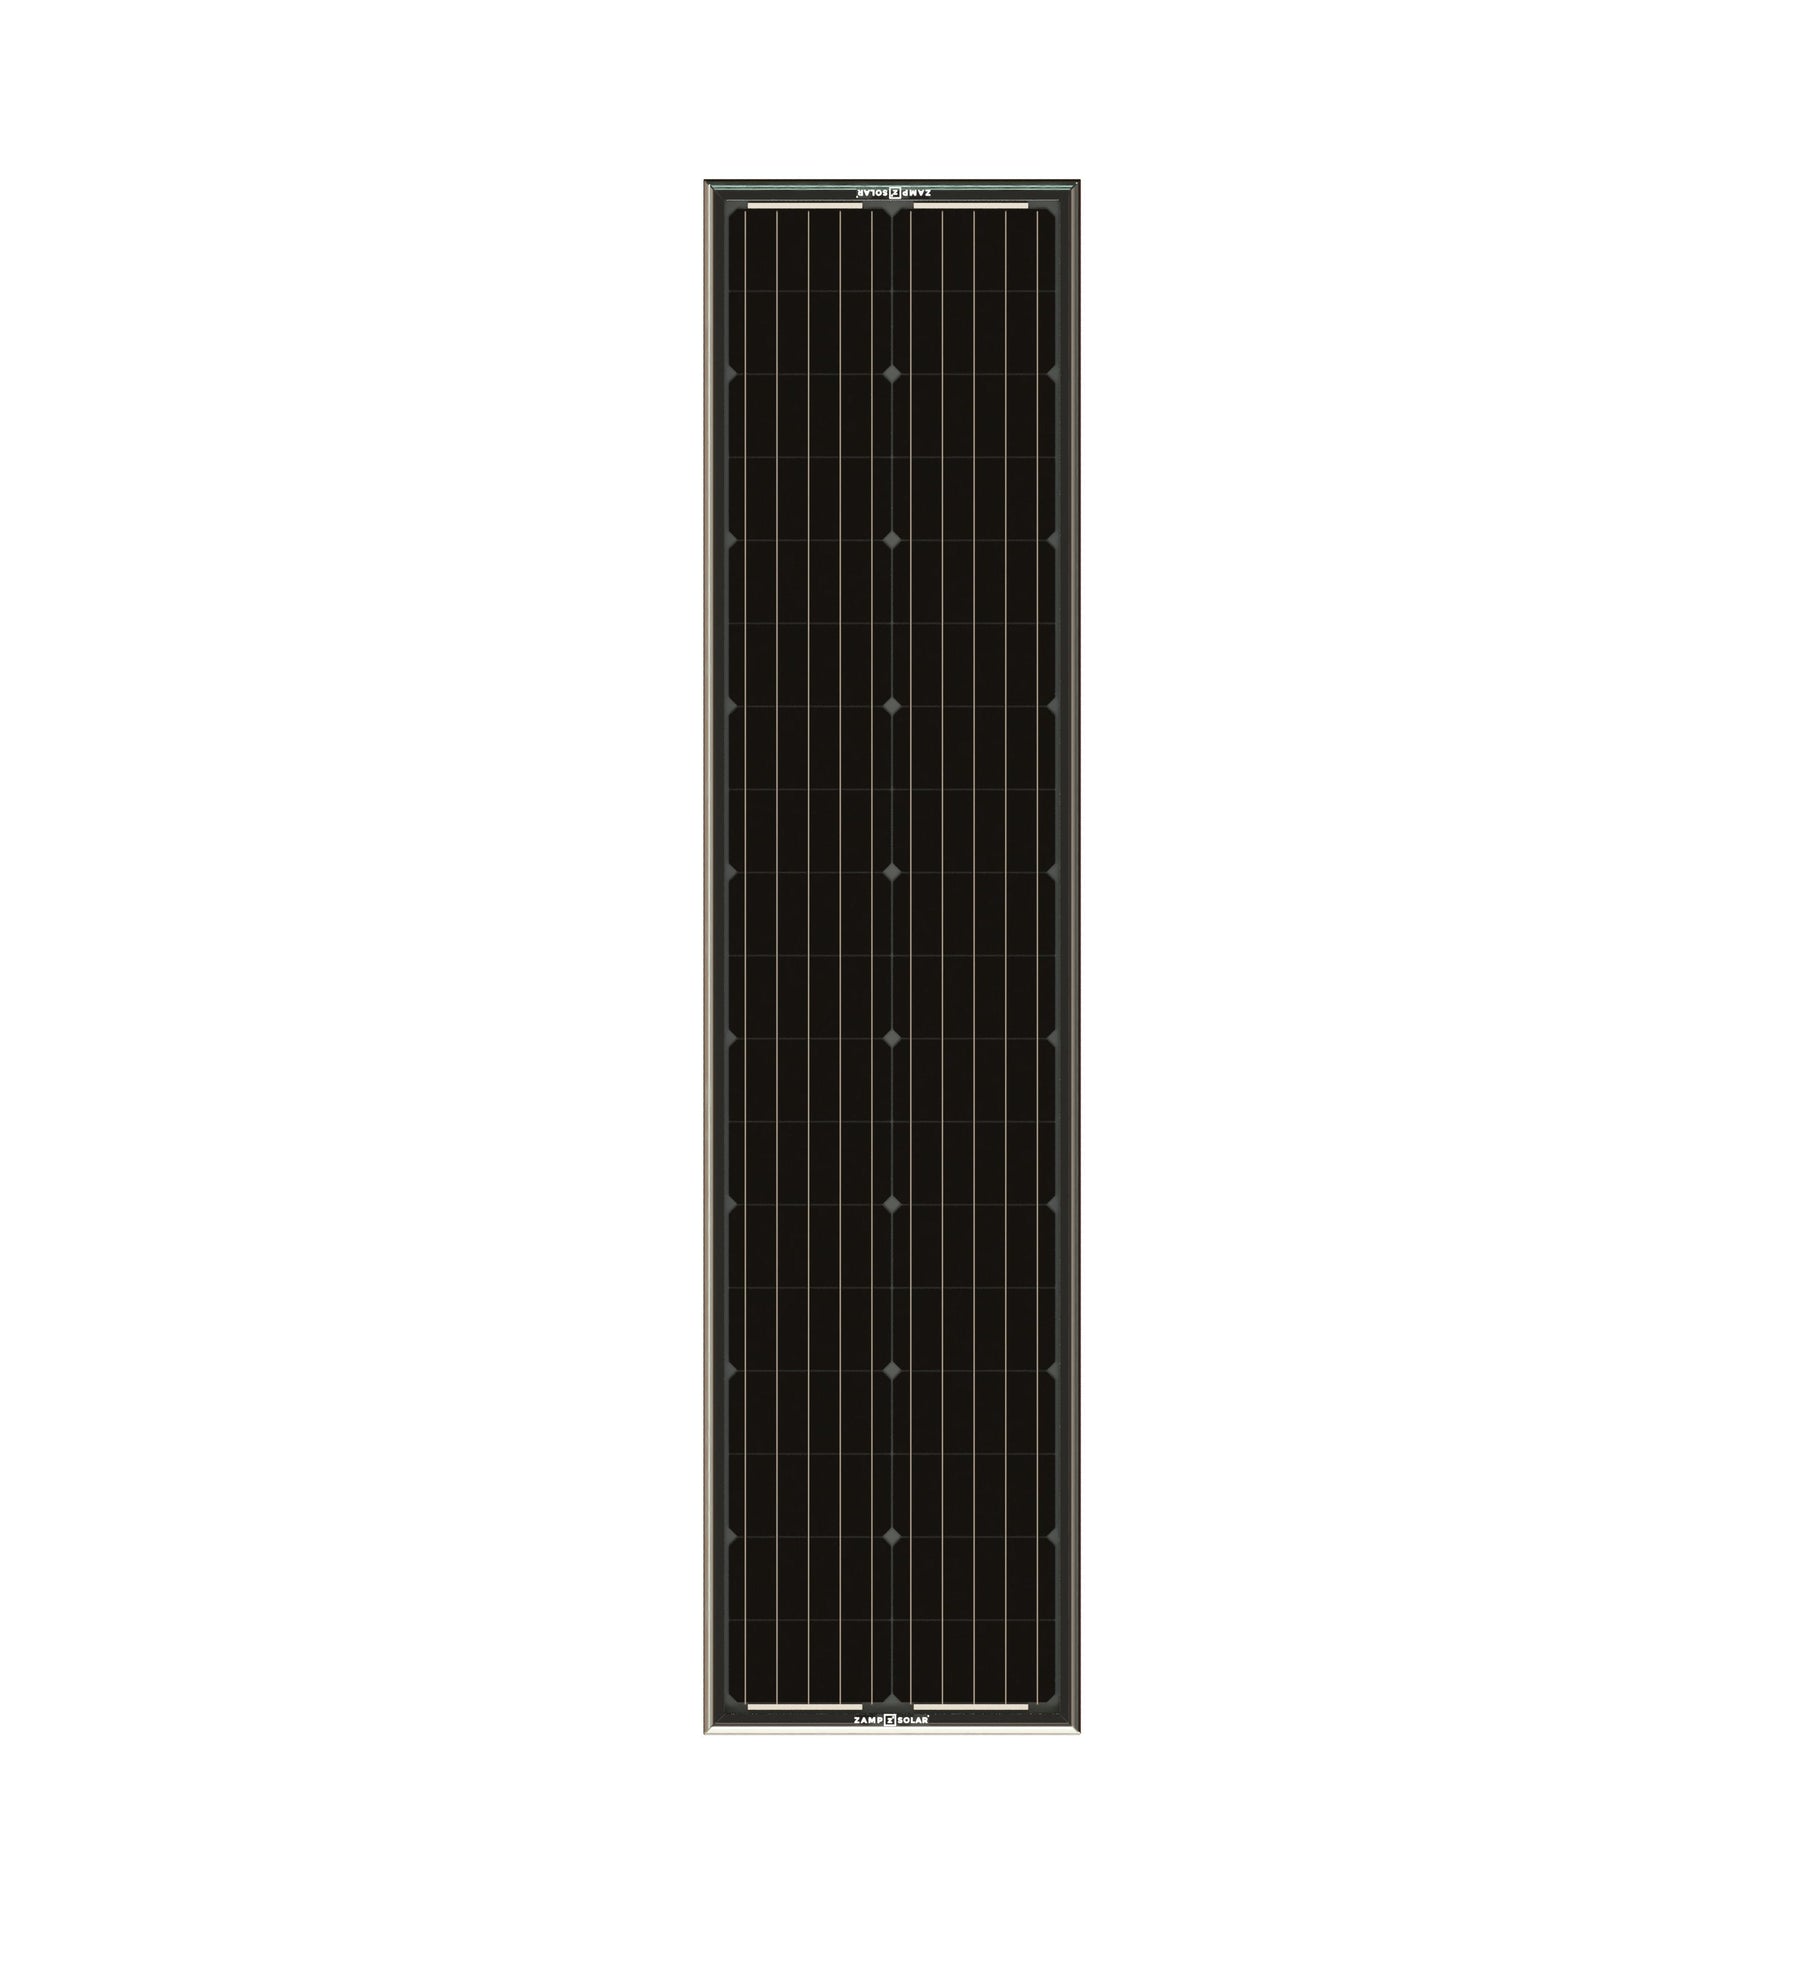 OBSIDIAN® SERIES 180 Watt Long Solar Panel Kit (2 x 90)  Roof Panel Kit Zamp Solar- Overland Kitted